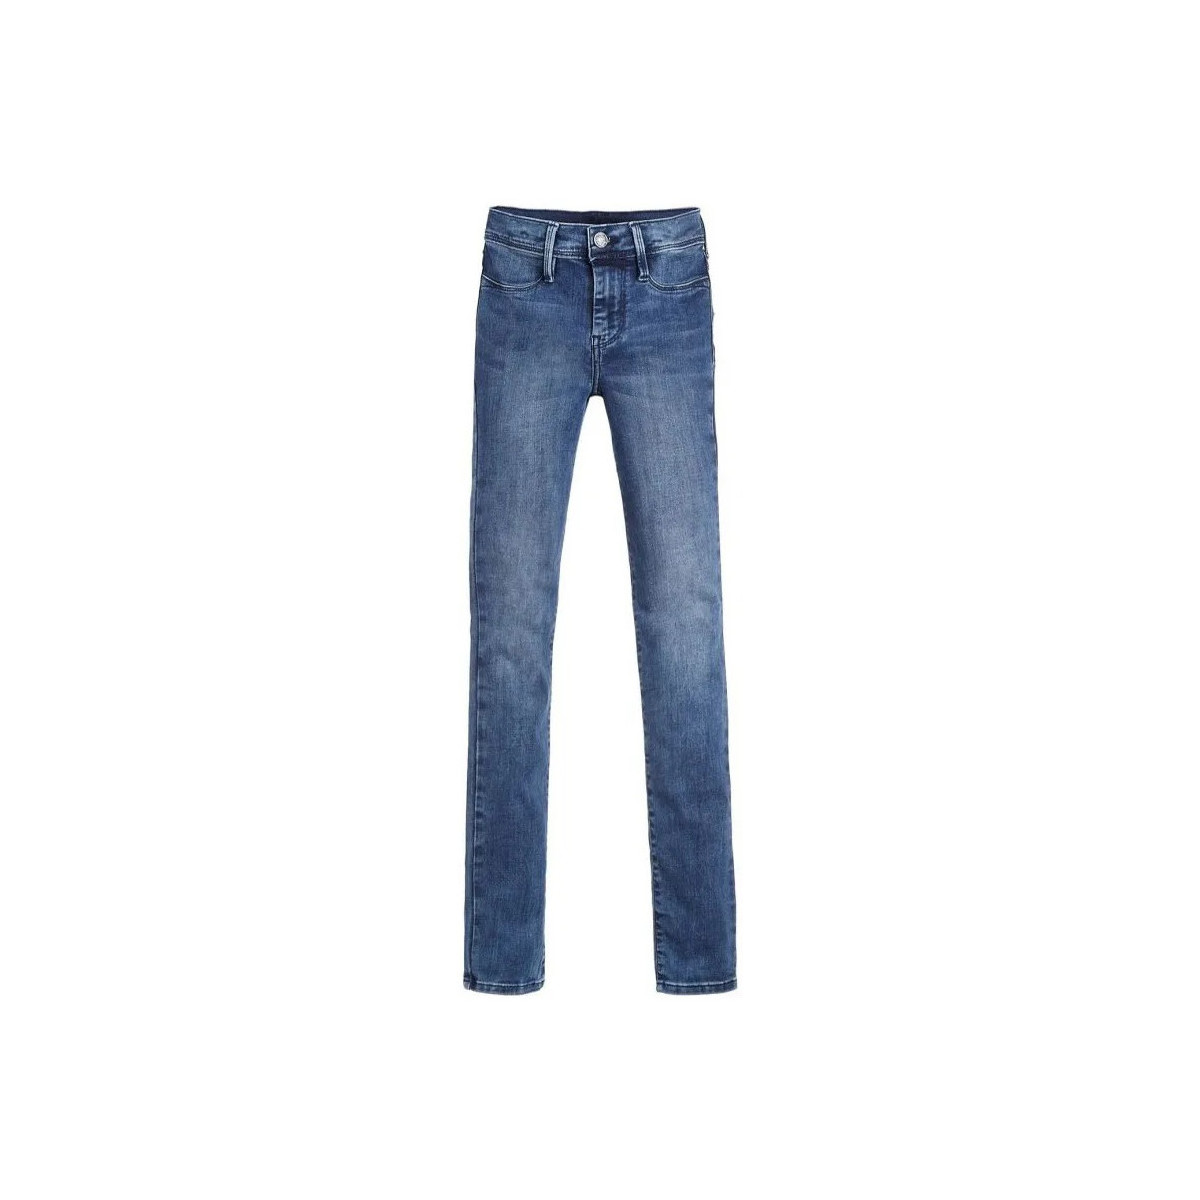 Abbigliamento Bambina Jeans skynny Teddy Smith 50105168D Blu